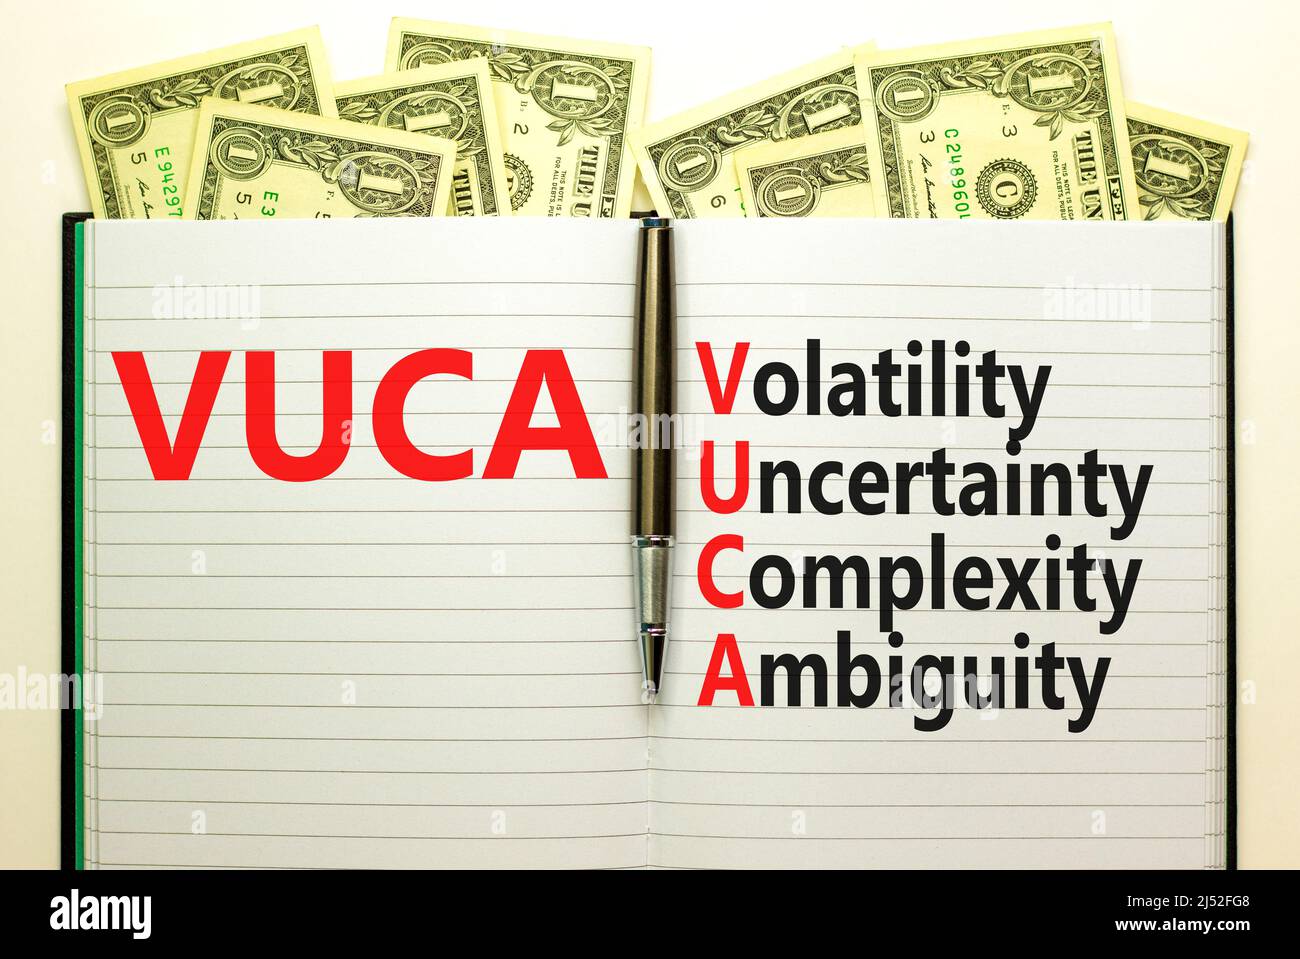 Símbolo de ambigüedad de la complejidad de la incertidumbre de la volatilidad de VUCA. Concepto palabras VUCA volatilidad incertidumbre complejidad ambigüedad en libro. Hermoso fondo blanco Foto de stock